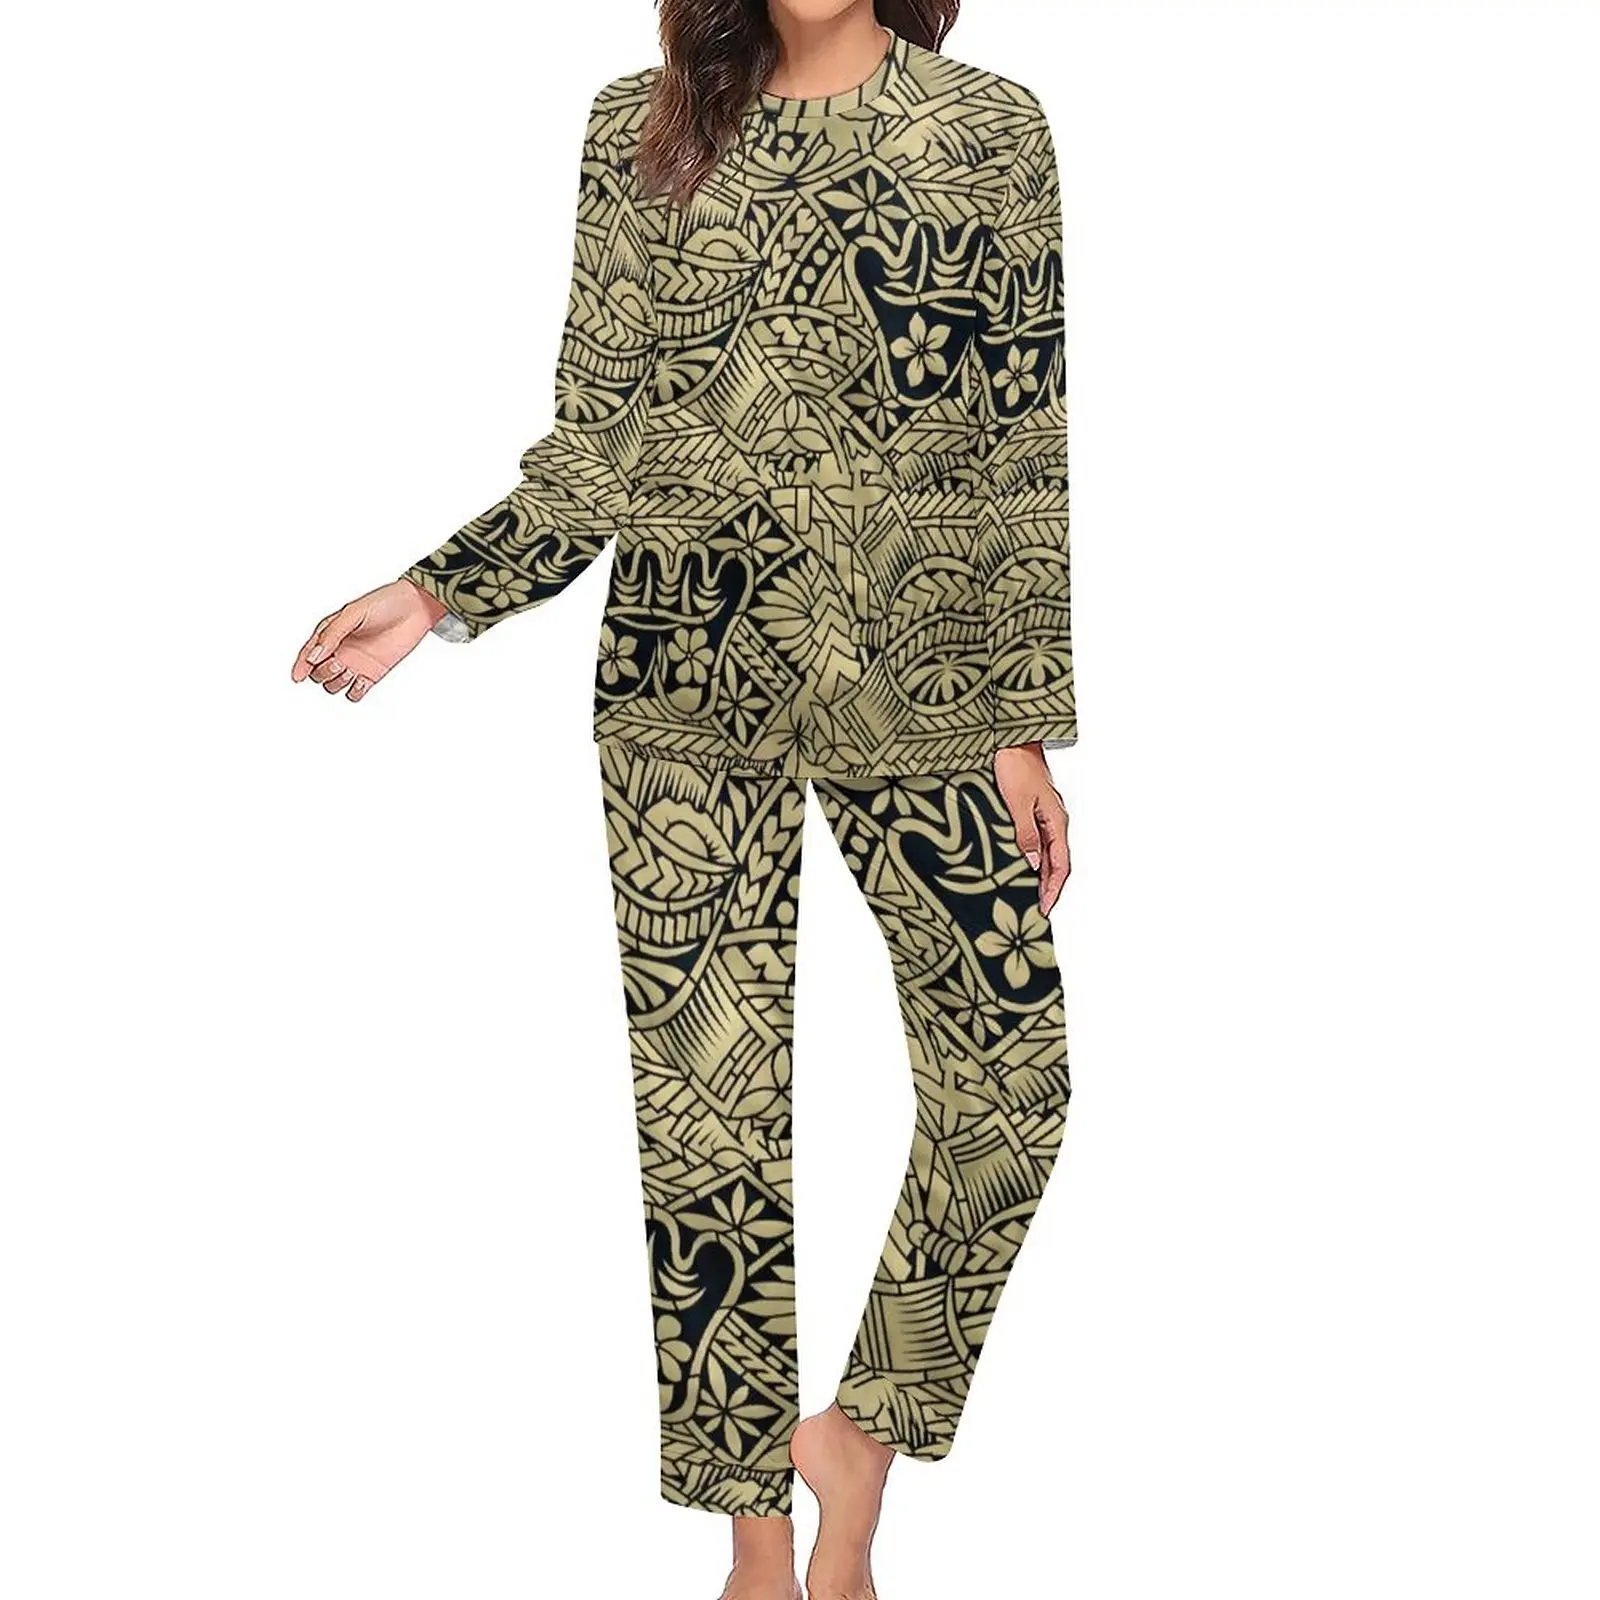 1 MOQ dropshipping loungewear polinesiano donna 2 pezzi set abbigliamento pigiama da notte con stampa in cotone poliestere di alta qualità